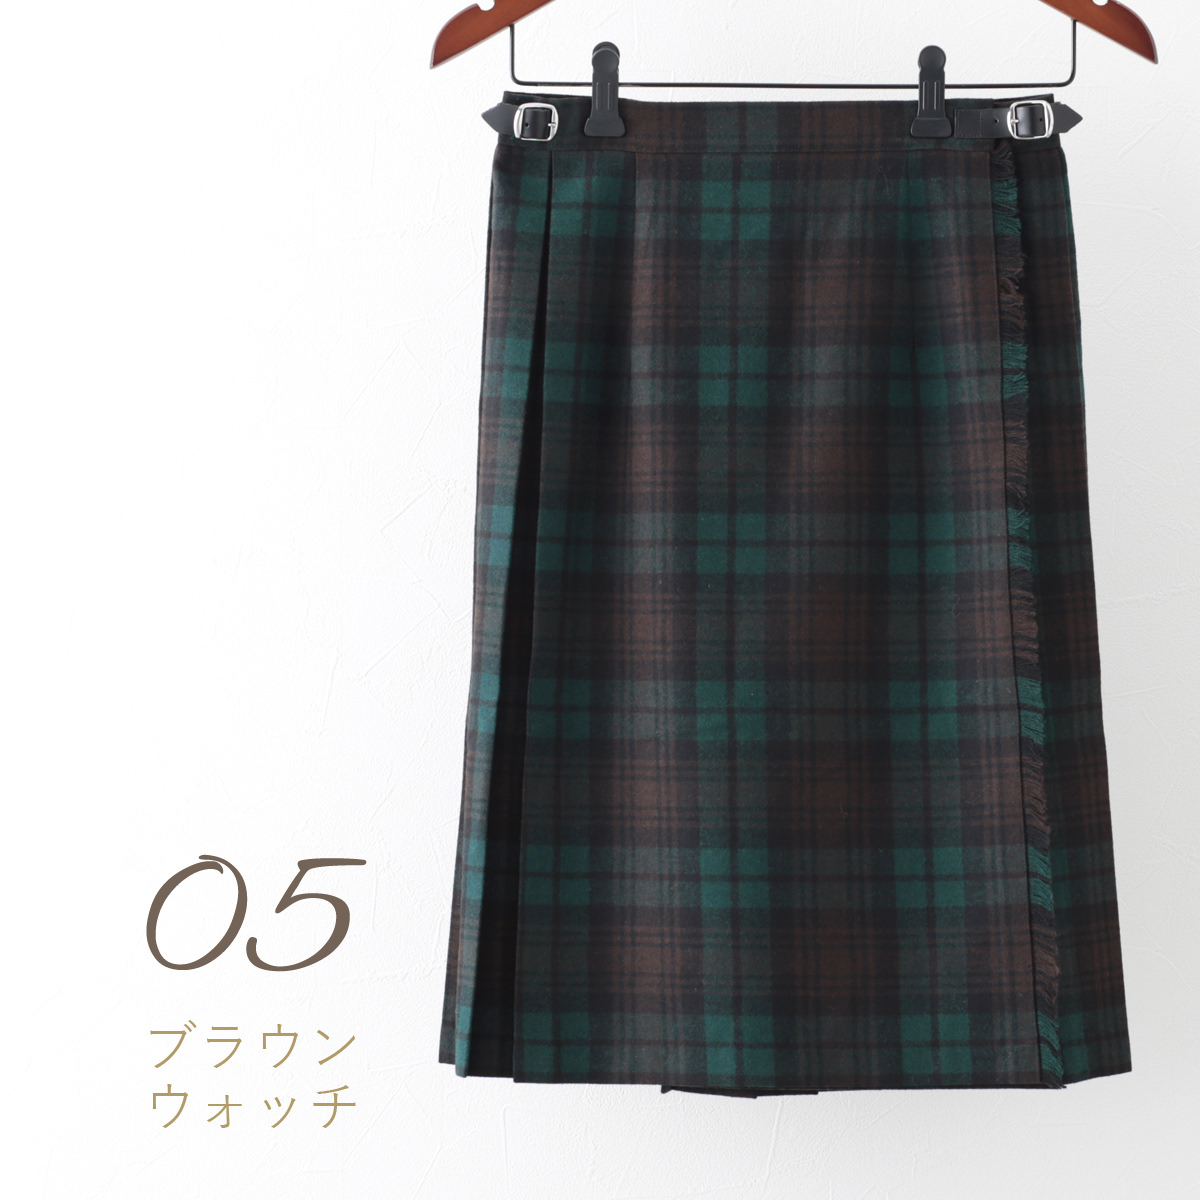 オニールオブダブリン スカート ウールミックス O'NEIL OF DUBLIN キルト 59cm 20色 タータンチェック ひざ丈 ラップスカート  巻きスカート アイルランド製